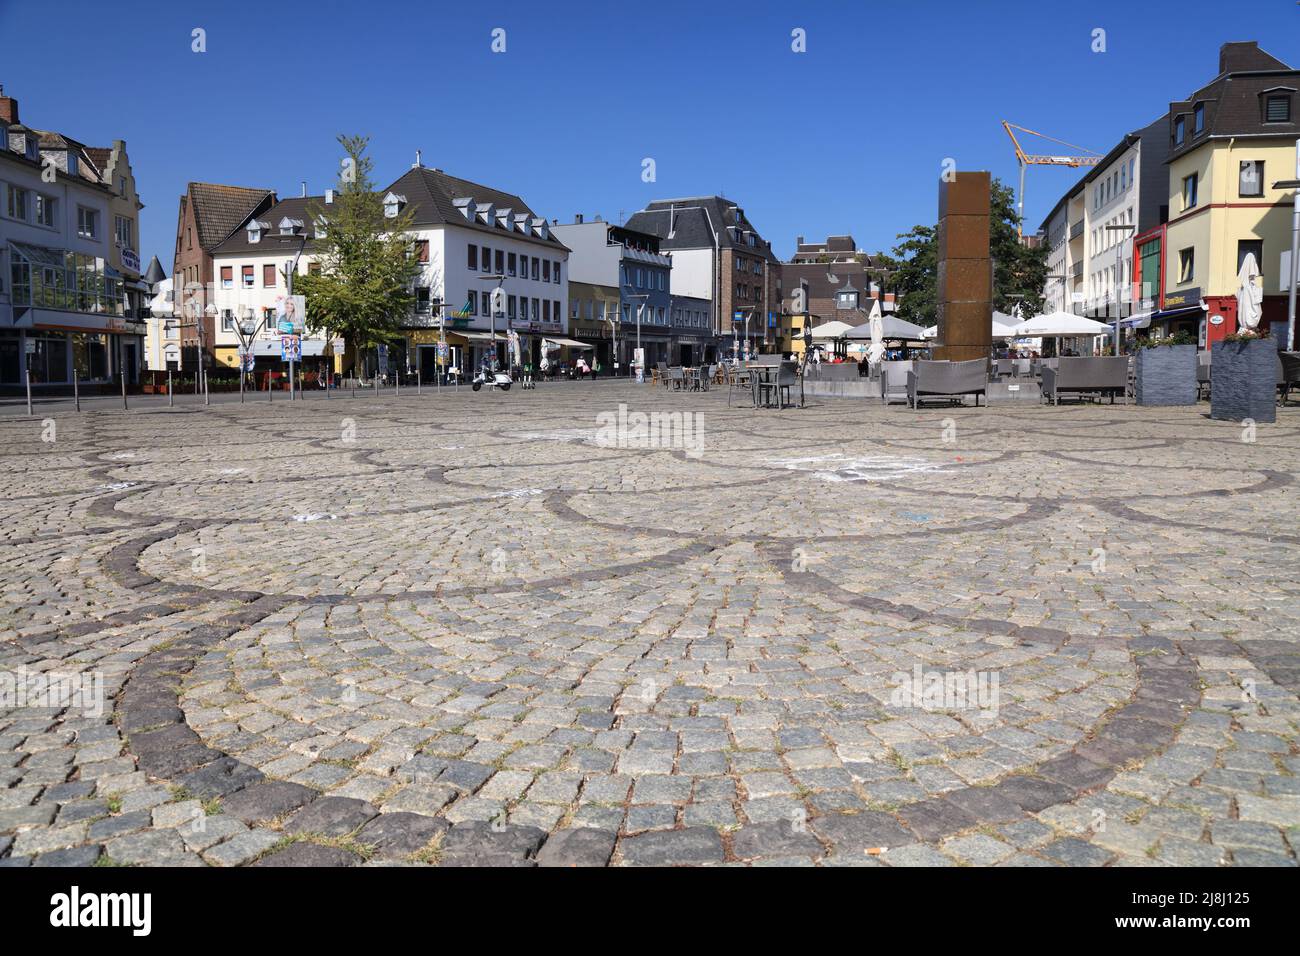 MÖNCHENGLADBACH, DEUTSCHLAND - 18. SEPTEMBER 2020: Besucher besuchen den Alten Markt Mönchengladbach, eine große Stadt in Nordrhein-Westfalen Stockfoto